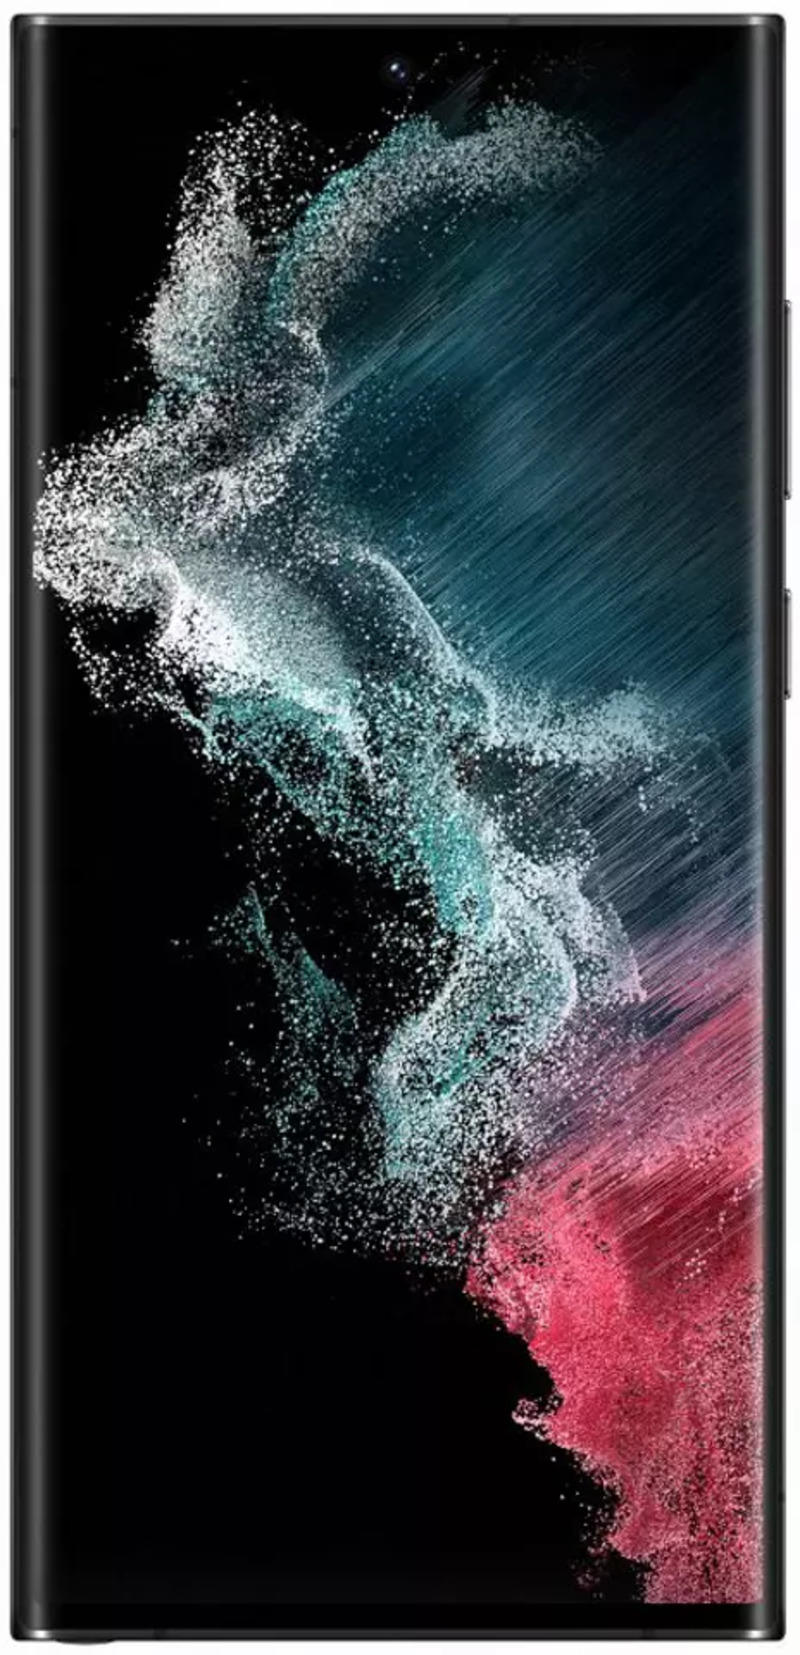 Samsung Galaxy S22 Ultra 5G là điện thoại đỉnh cao của công nghệ, mang lại cho bạn tốc độ xử lý nhanh chóng, tính năng chụp ảnh đẳng cấp và viên pin lớn giúp bạn sử dụng điện thoại liên tục suốt cả ngày.